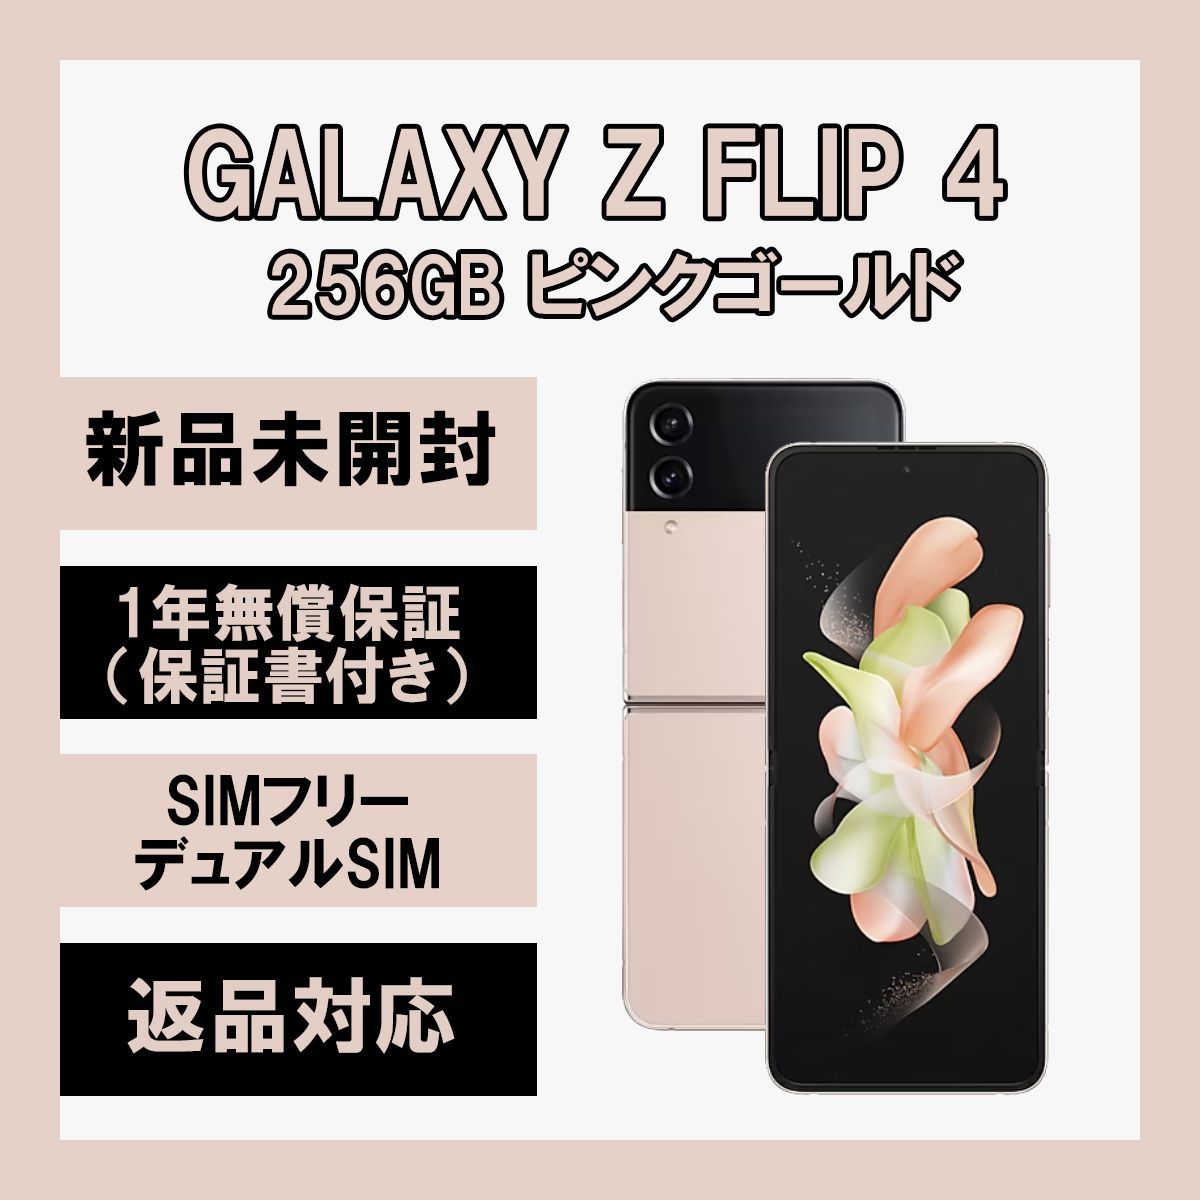 GALAXY FLiP4 256GB ピンクゴールド 韓国モデル